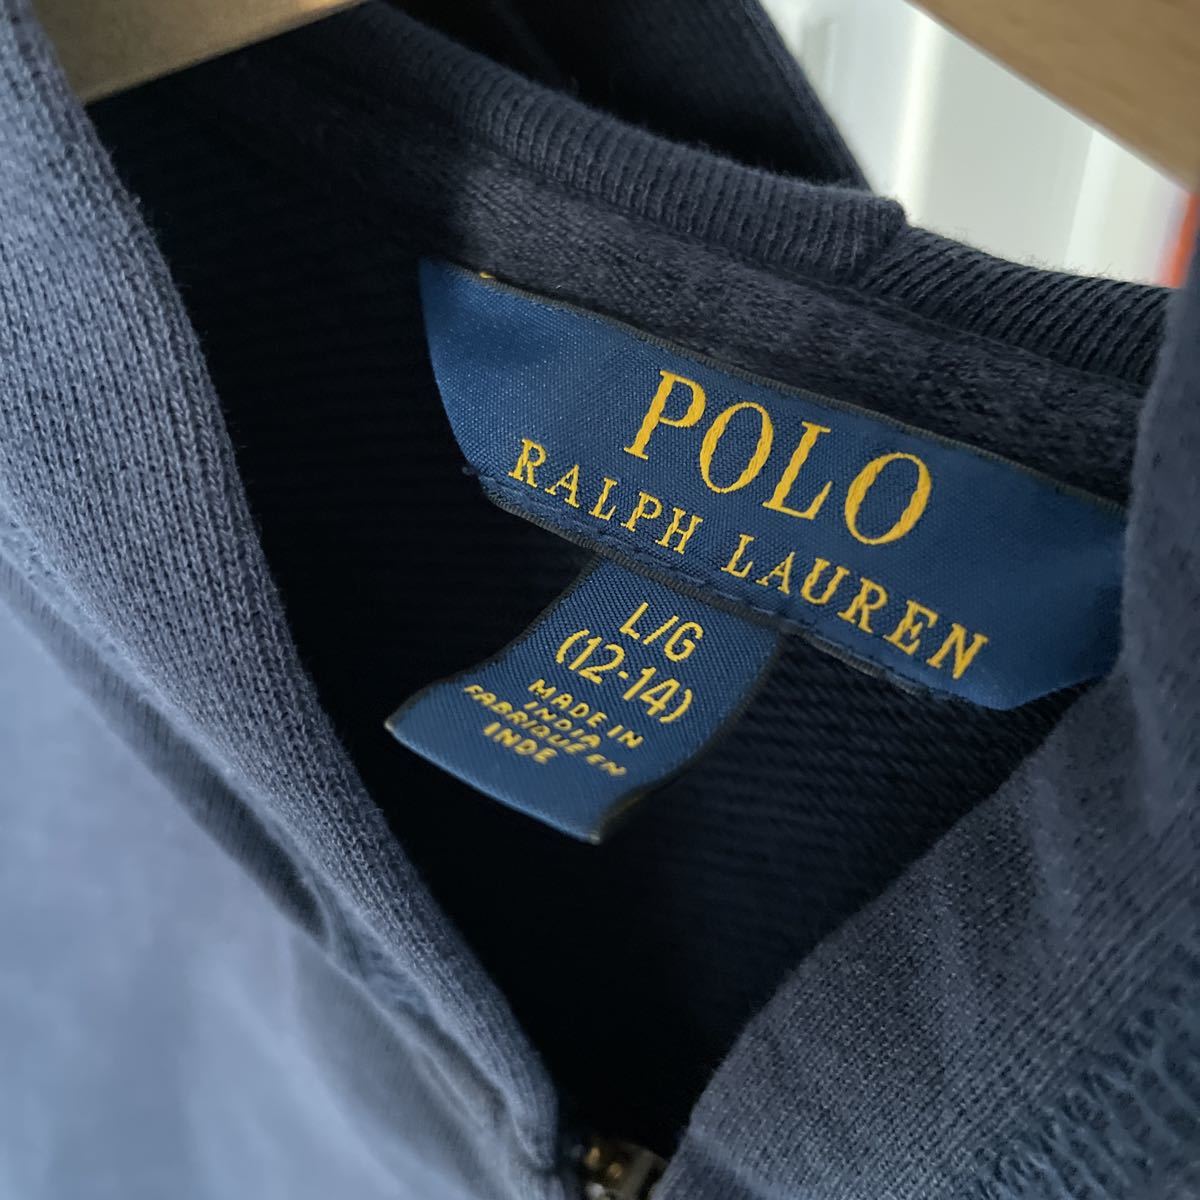 RALPH LAUREN Polo Ralph Lauren sweat Parker Zip up long sleeve L 12 -years old 14 -years old Kids navy ... Hawaii 